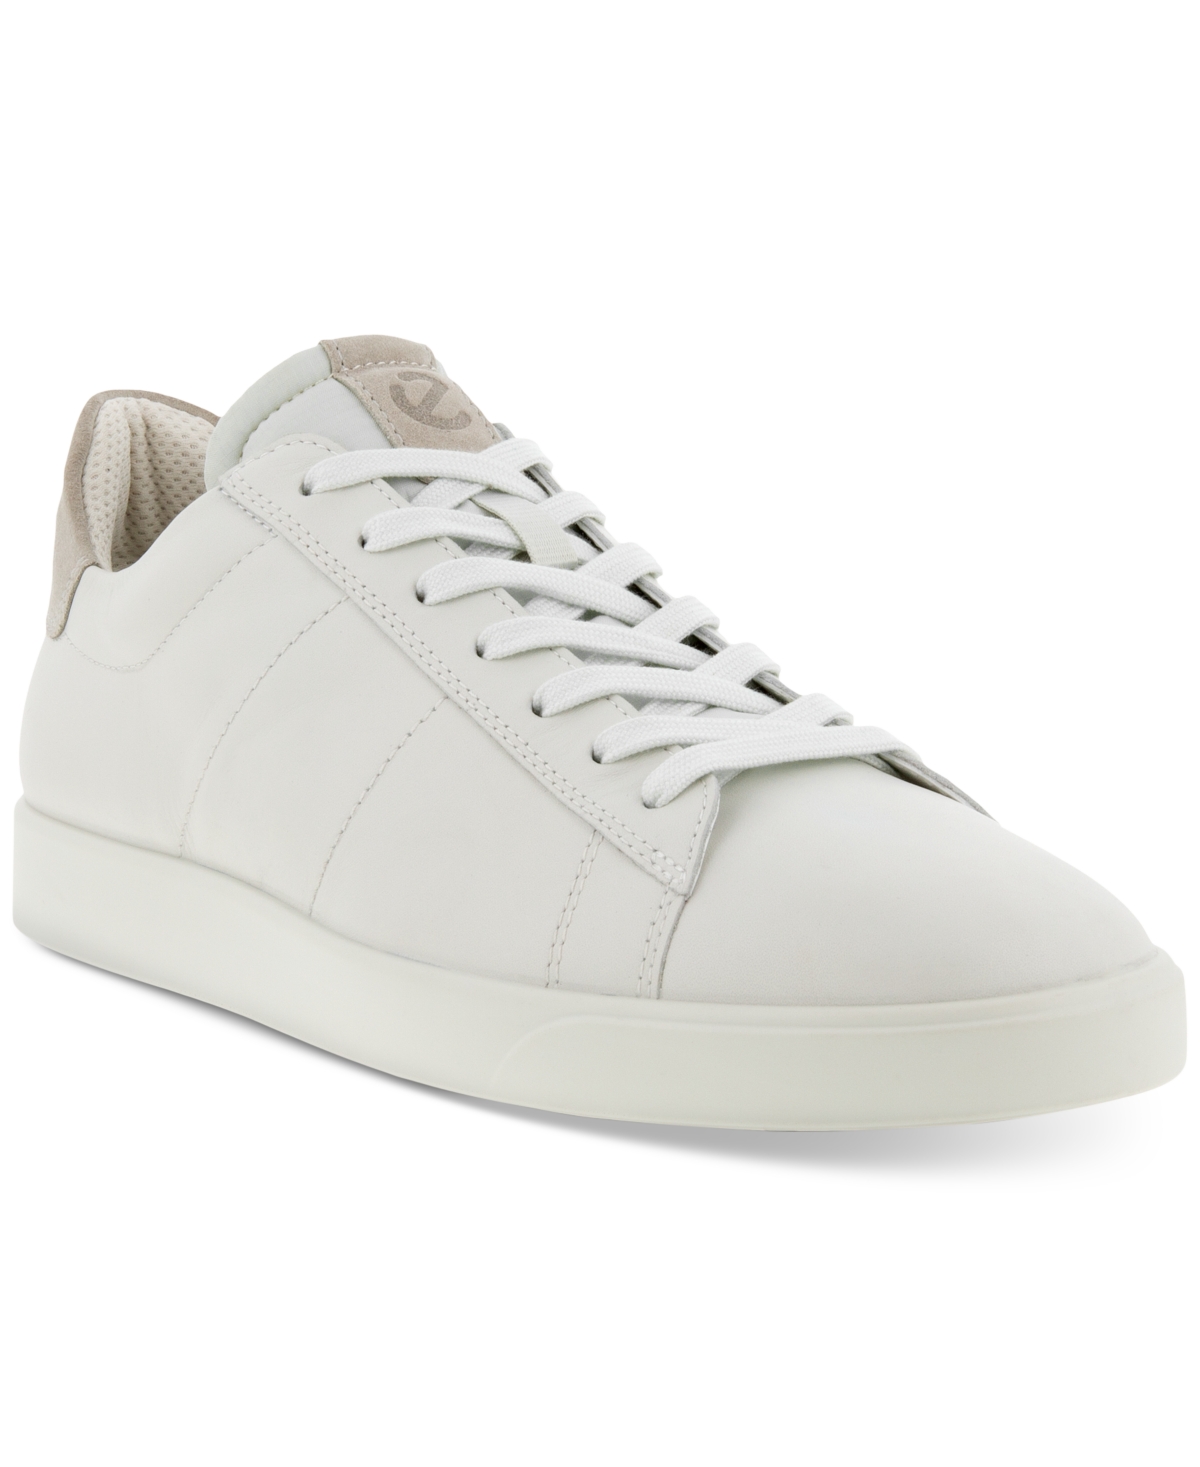 Men's Street Lite Retro Sneaker - White/Gravel